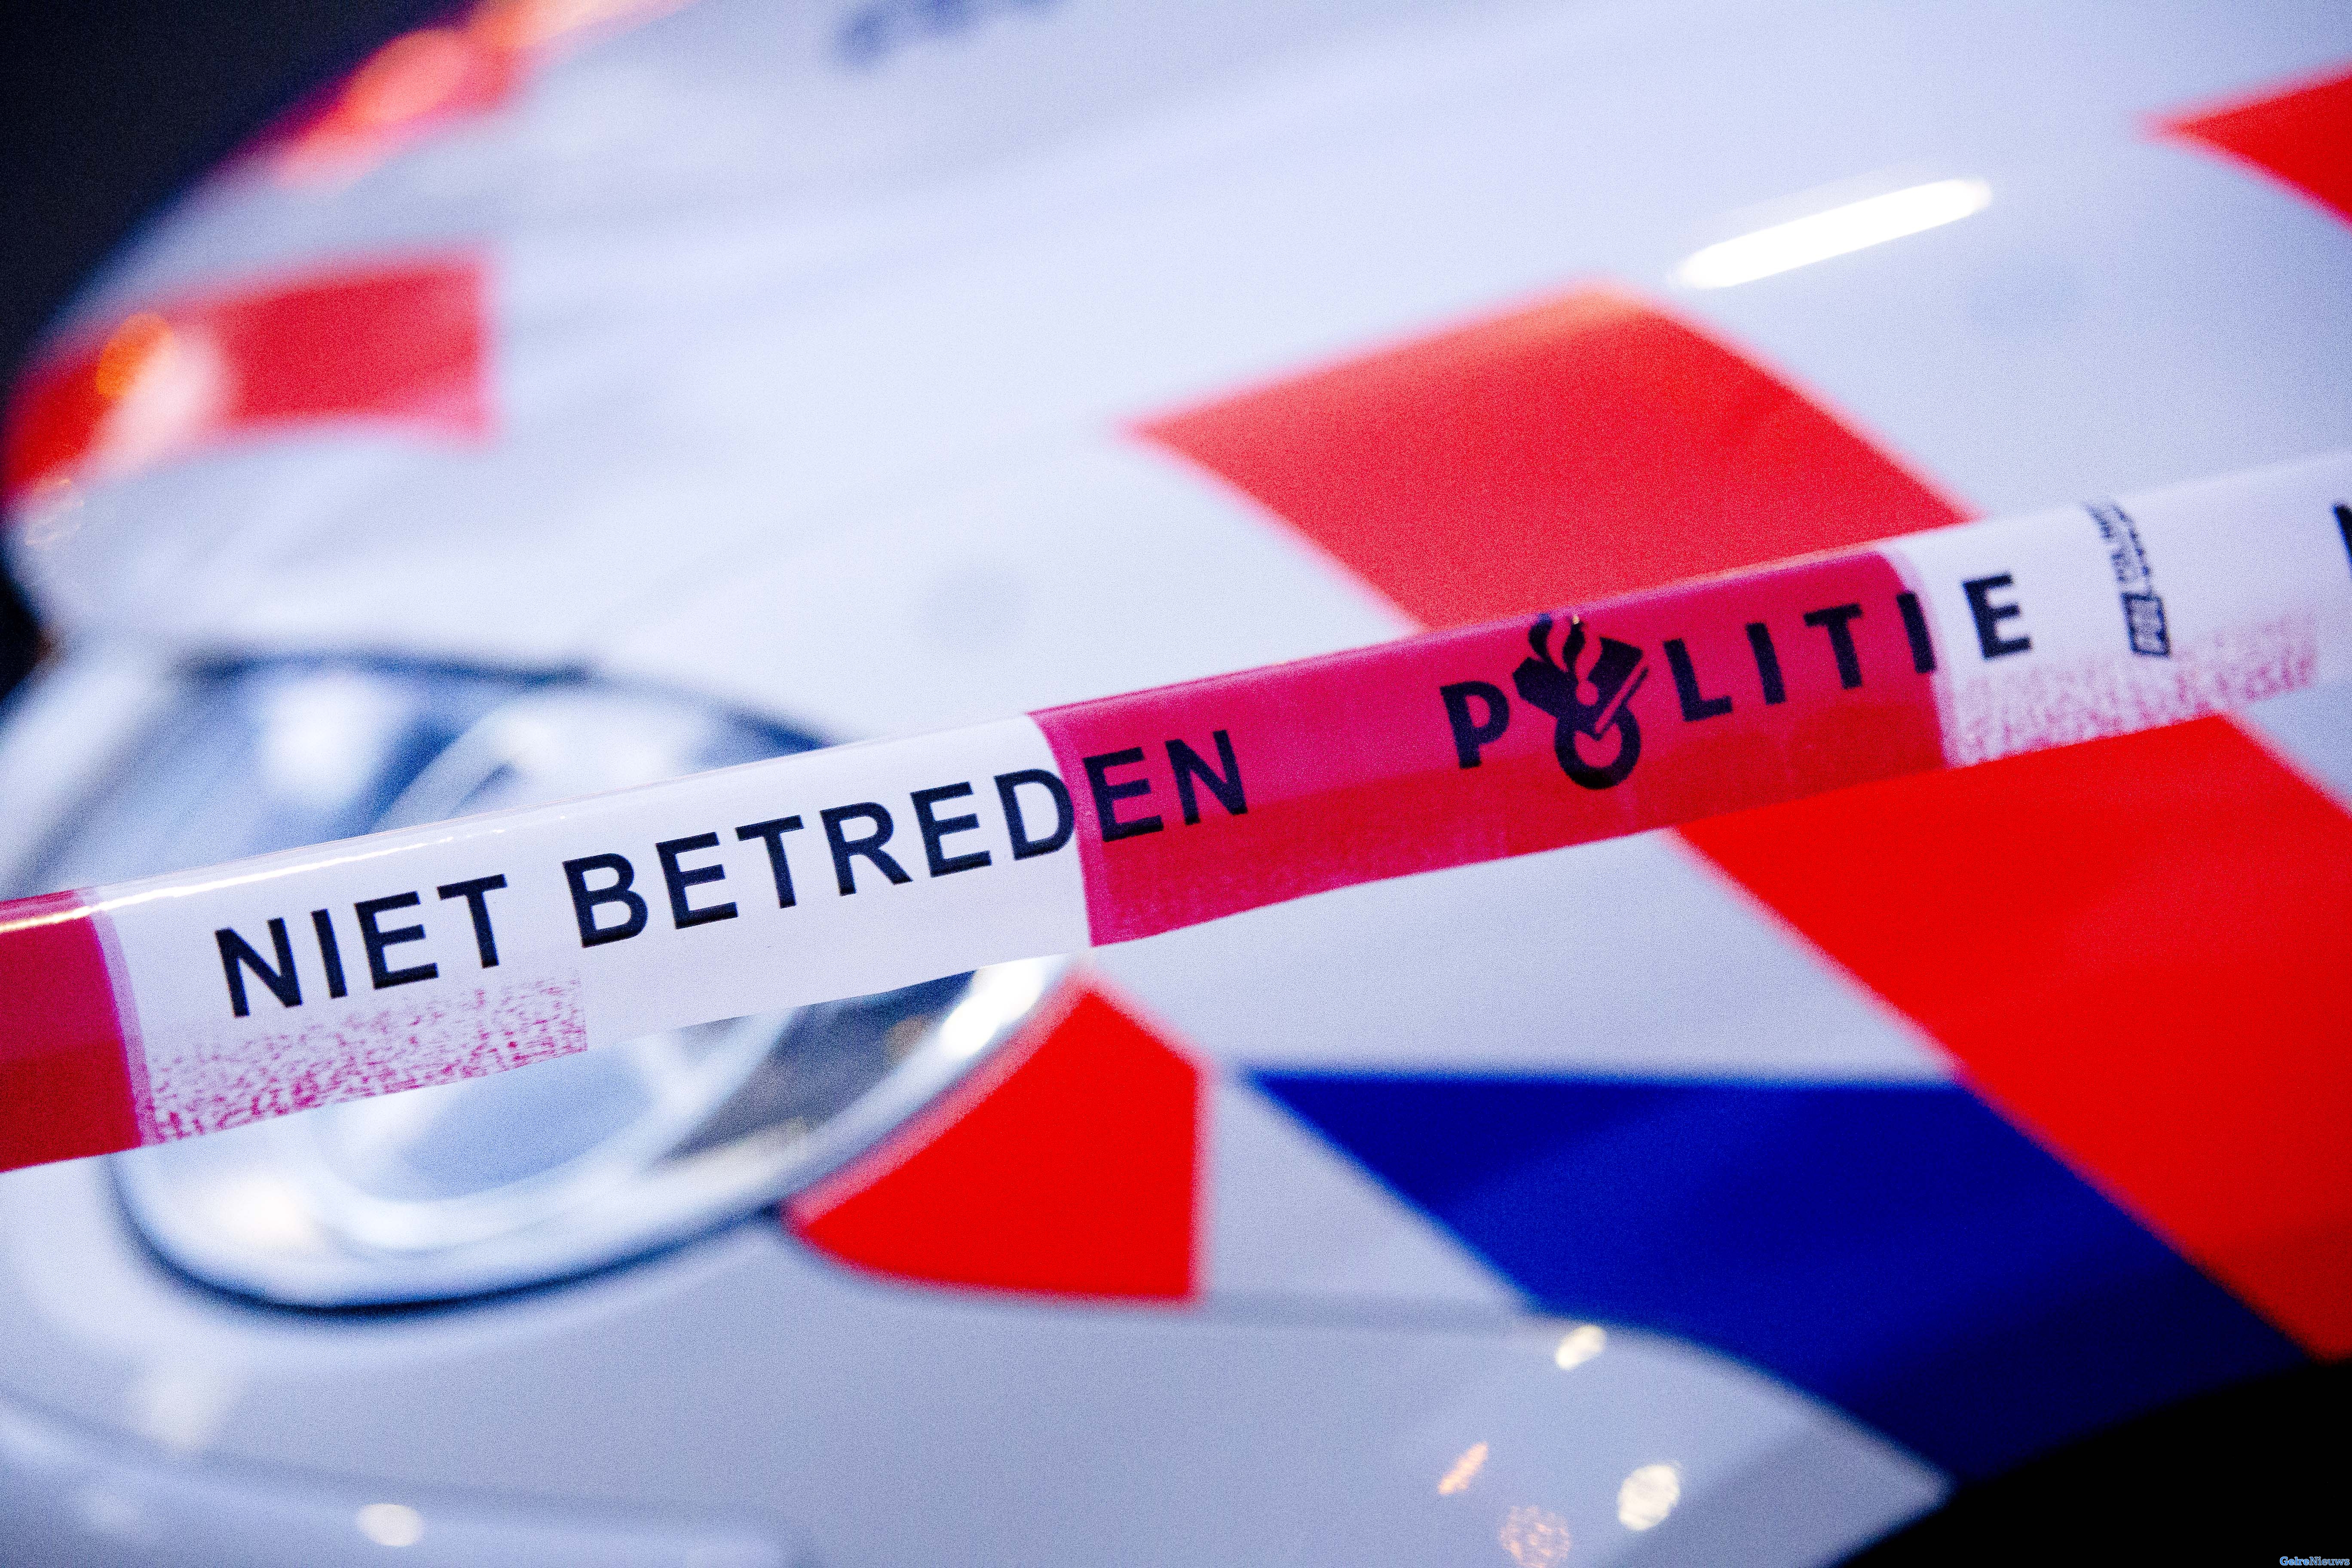 Twee mannen op gepakt voor poging doodslag in Apeldoorn